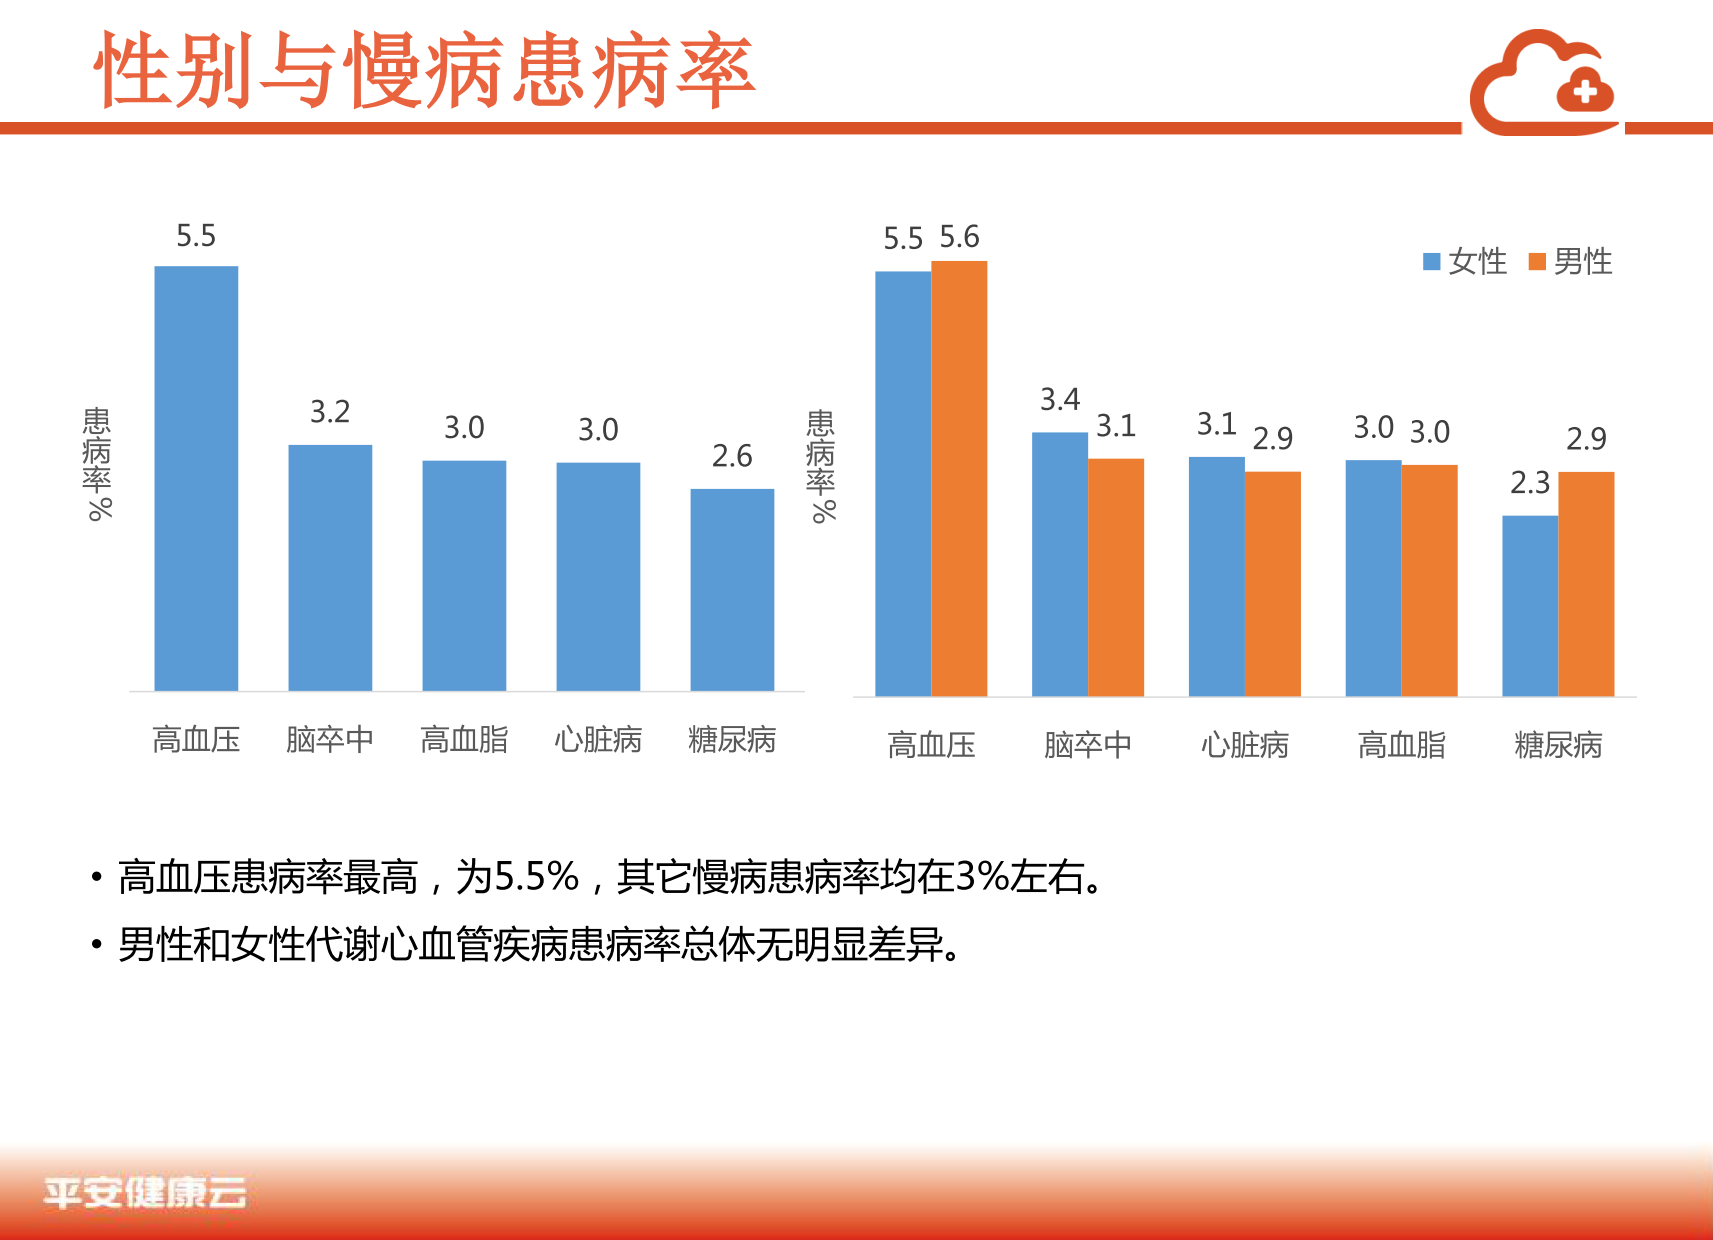 中国商业保险健康大数据白皮书_2_07.png